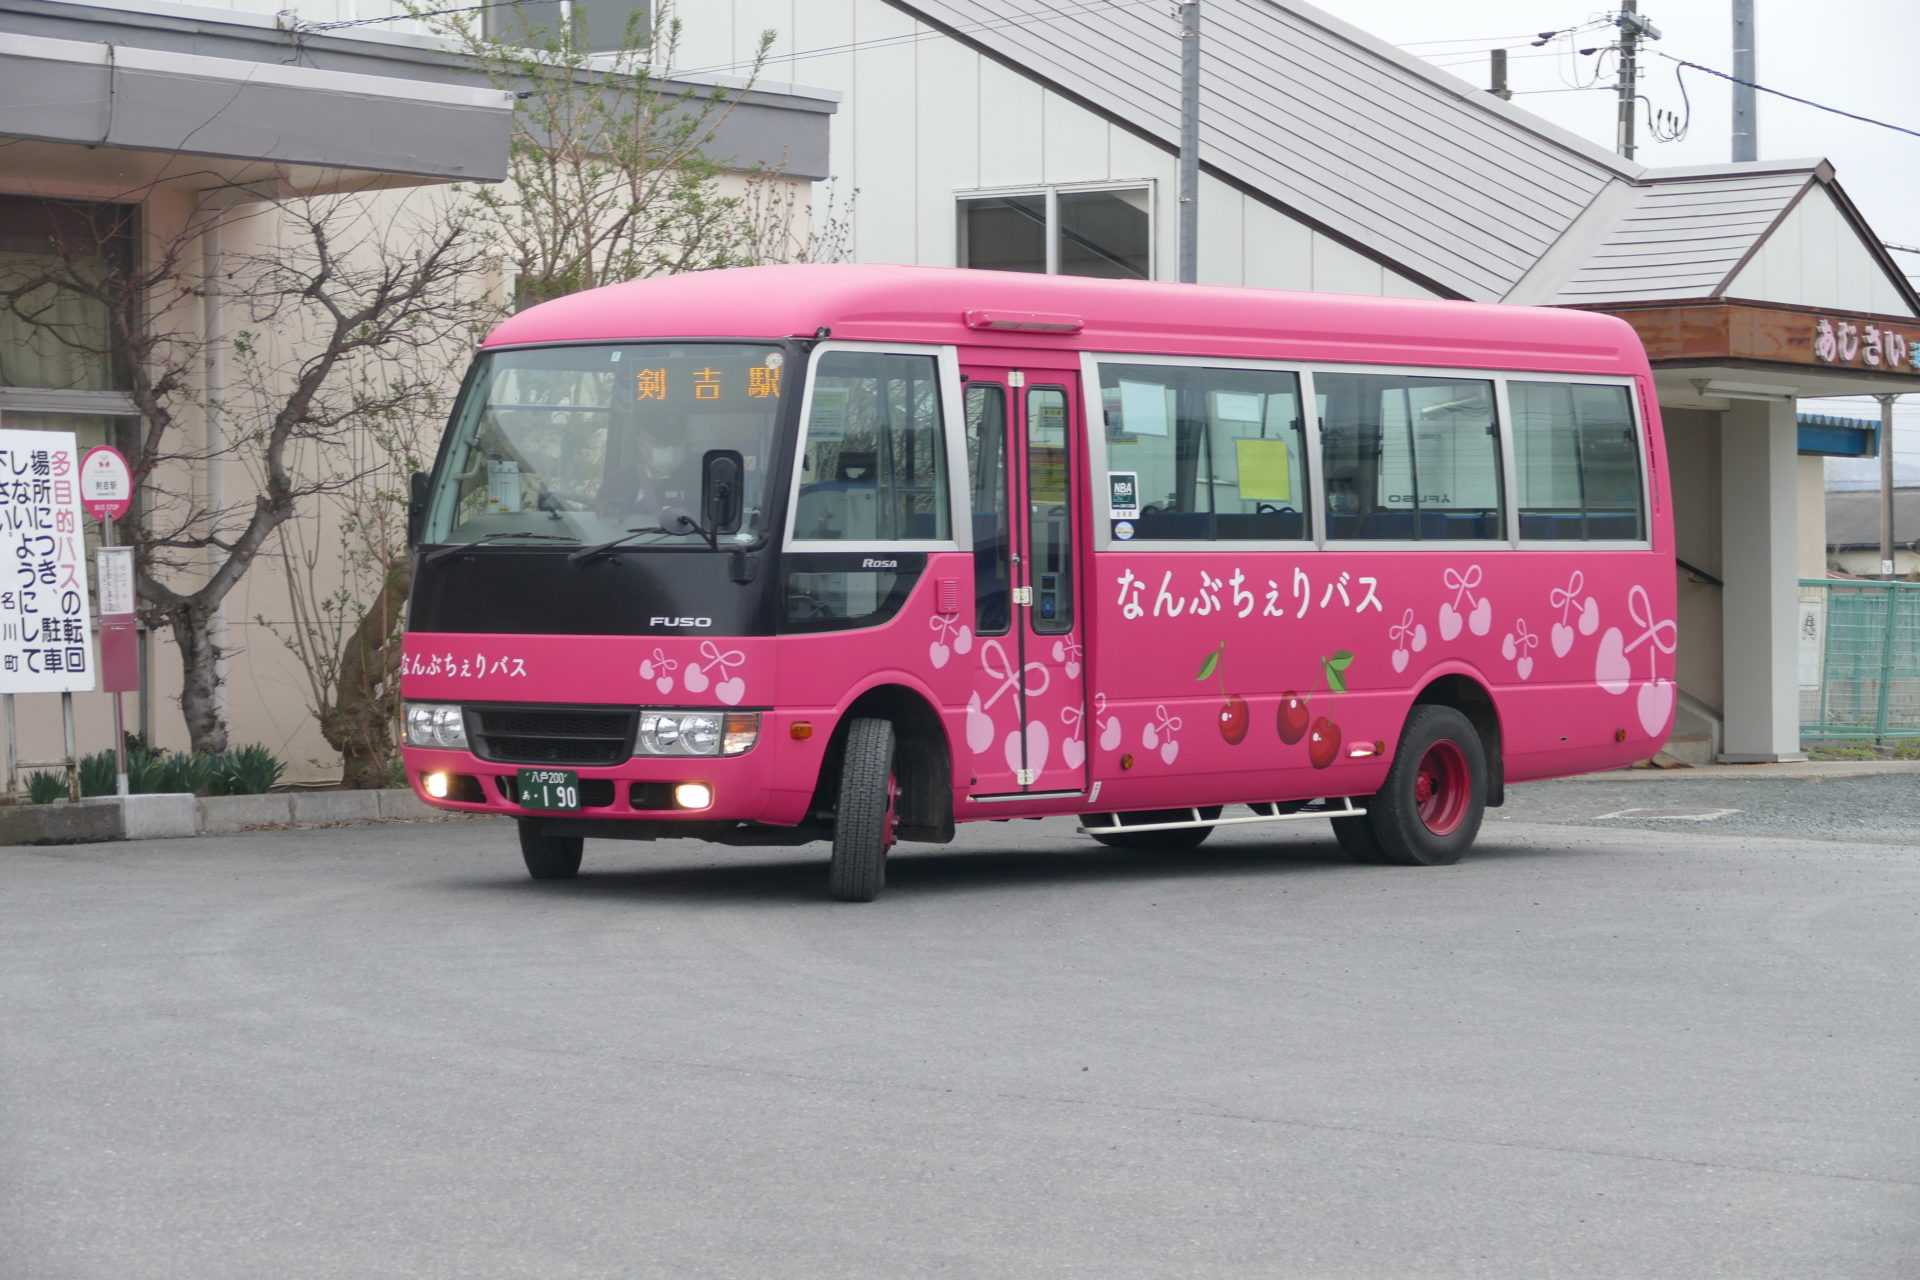 八戸圏域で使える交通系ＩＣカード「ハチカ」を作って「なんぶちぇりバス」を探してみました